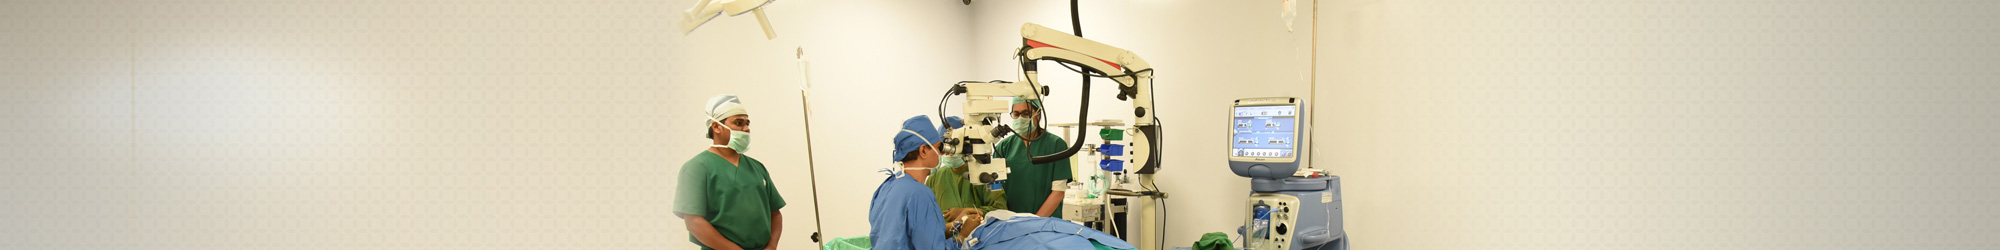 Keratoconus Treatment in india, Keratoconus Surgery In Mumbai